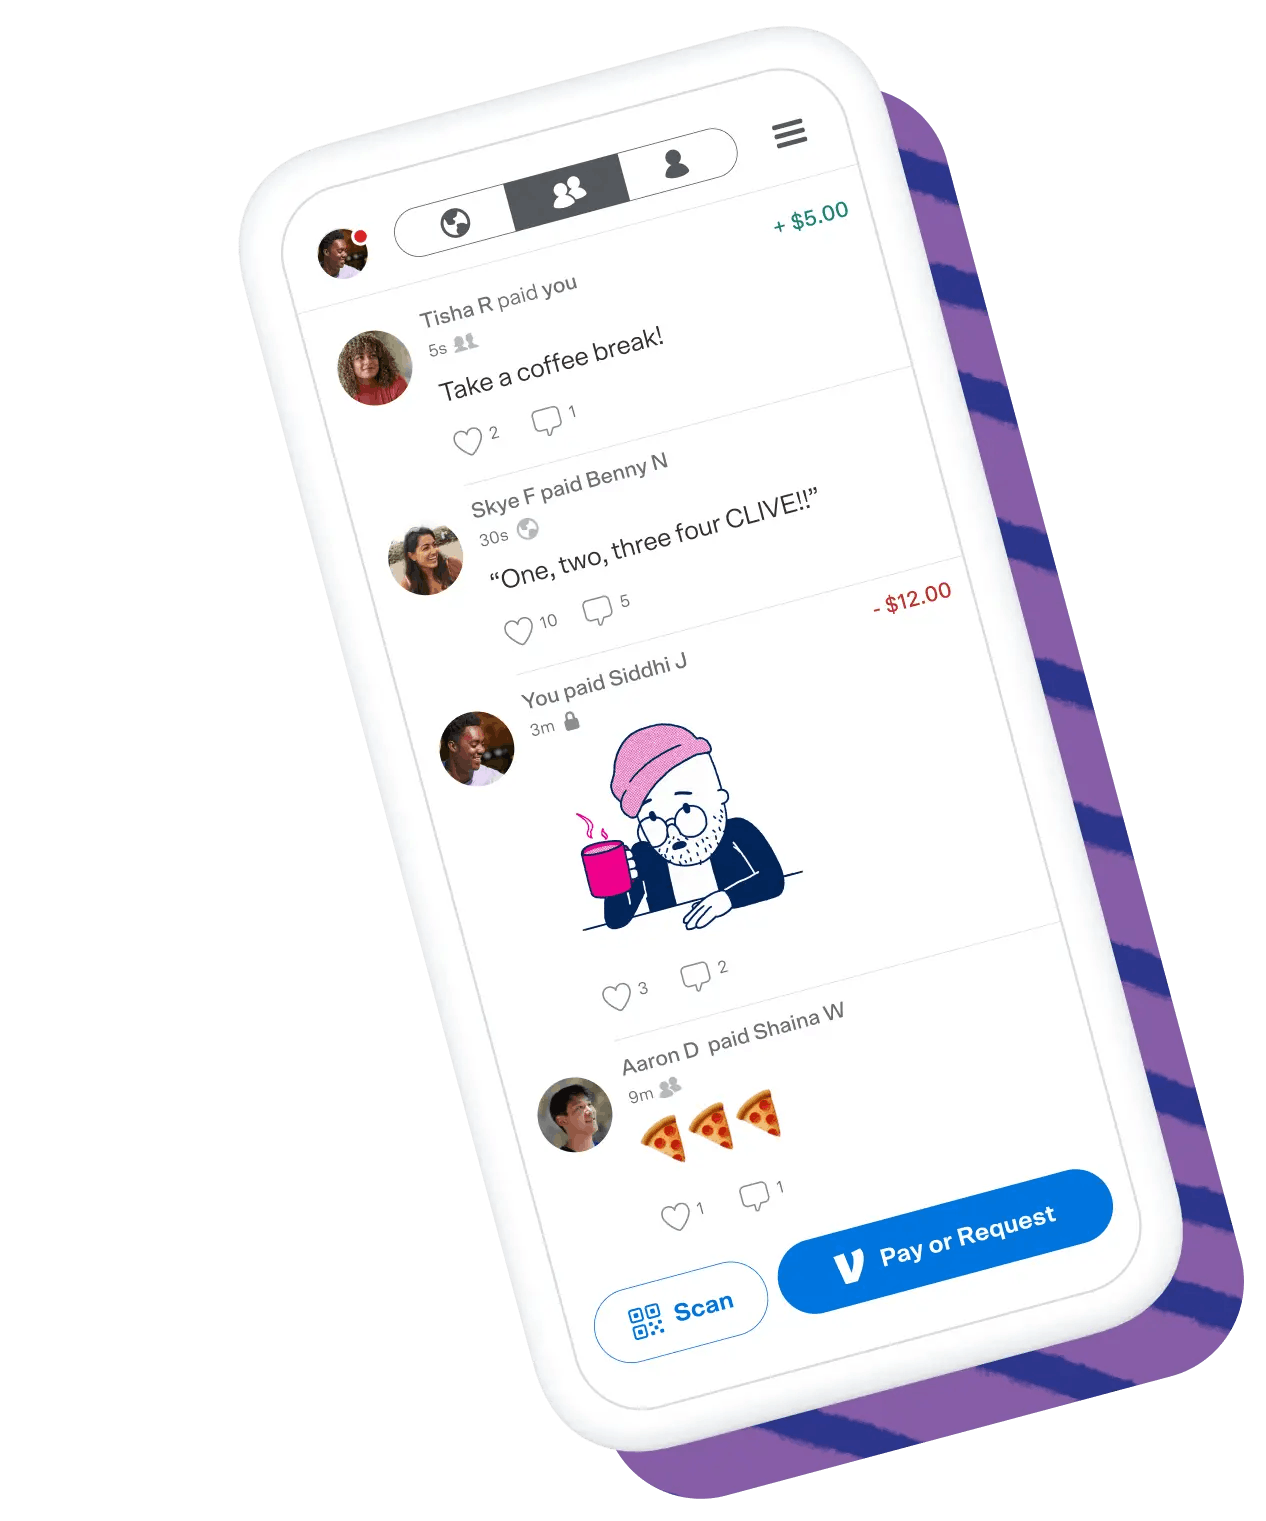 Social feed in the Venmo app